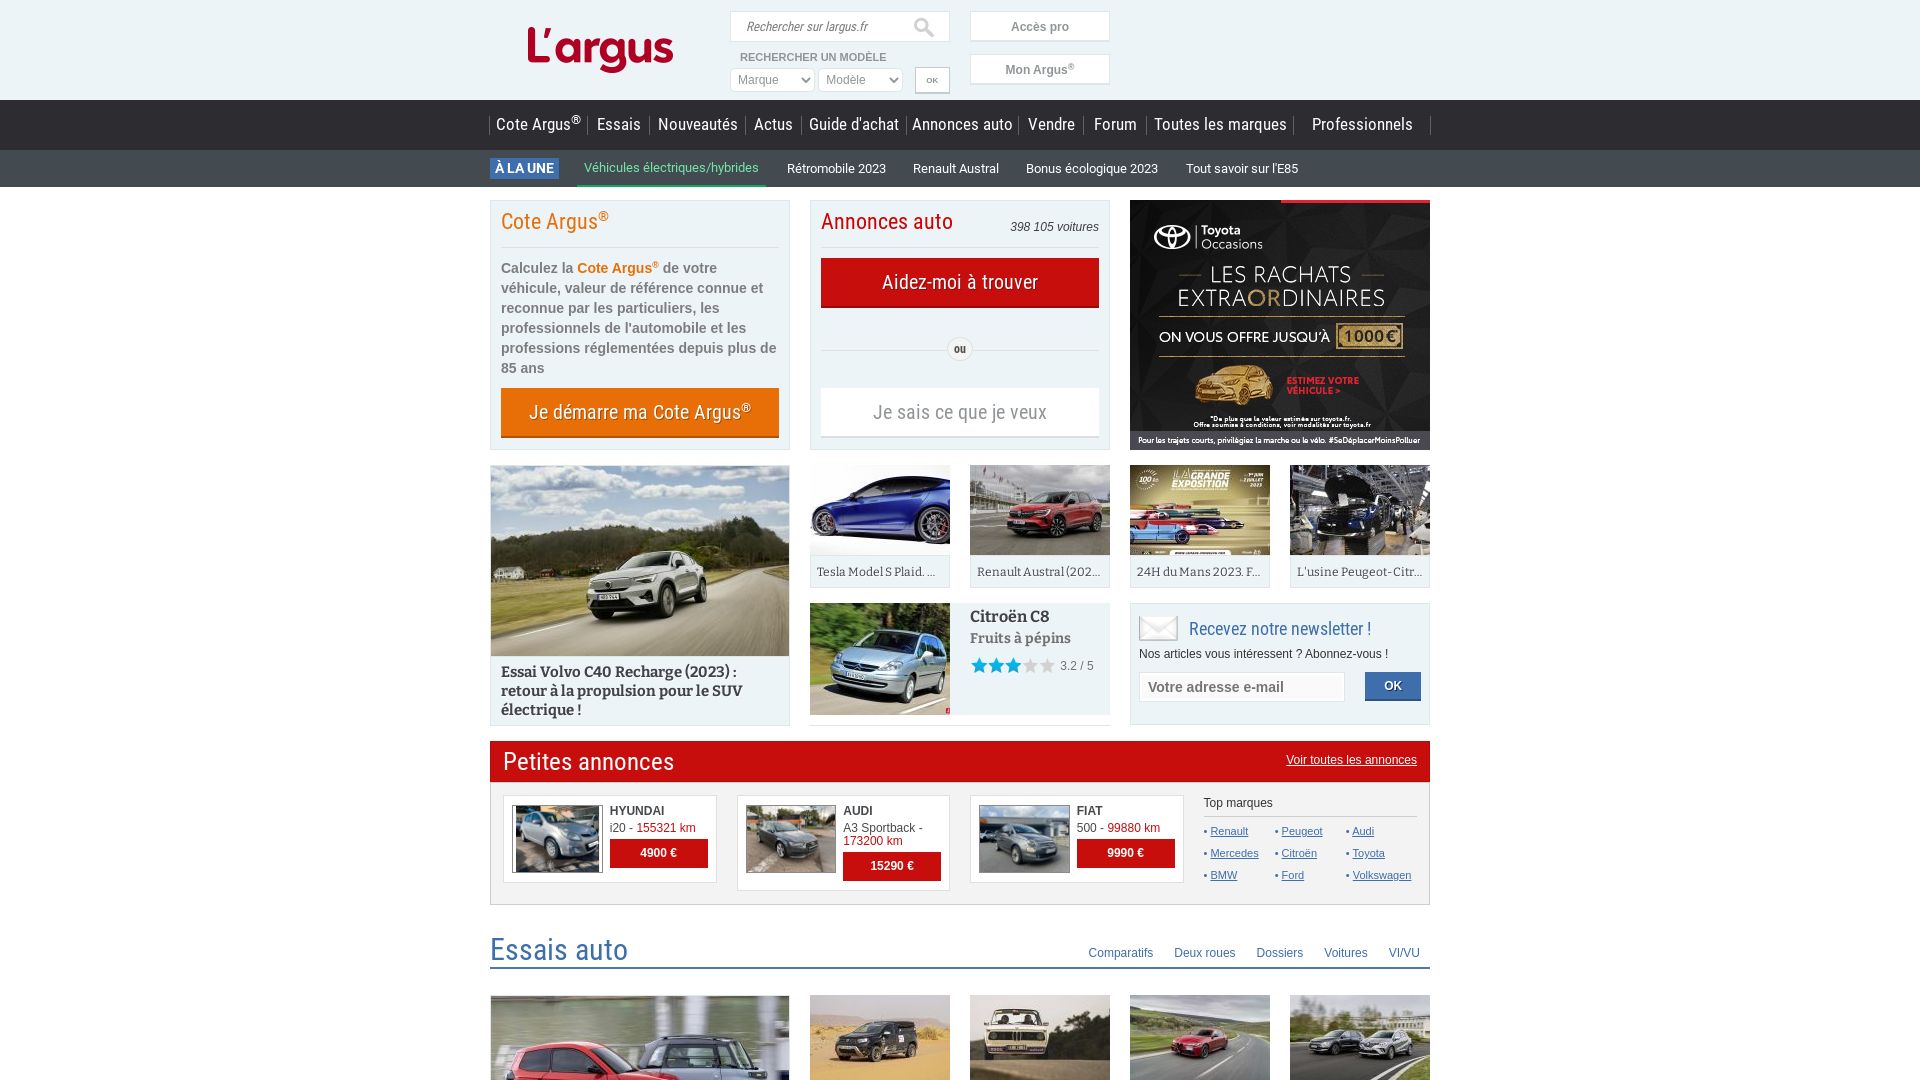 Website status largus.fr is   ONLINE